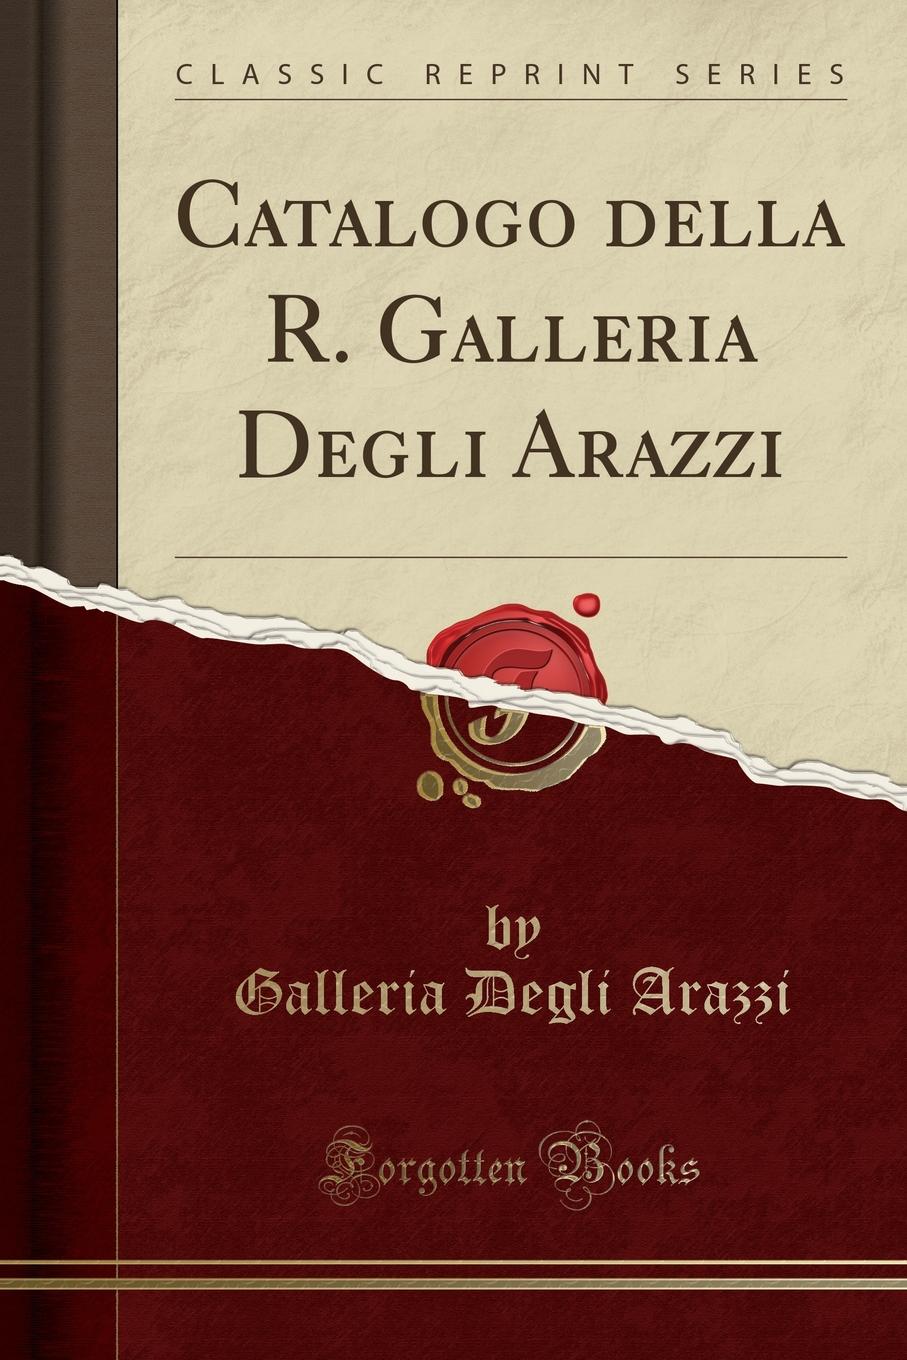 Galleria Degli Arazzi Catalogo della R. Galleria Degli Arazzi (Classic Reprint)